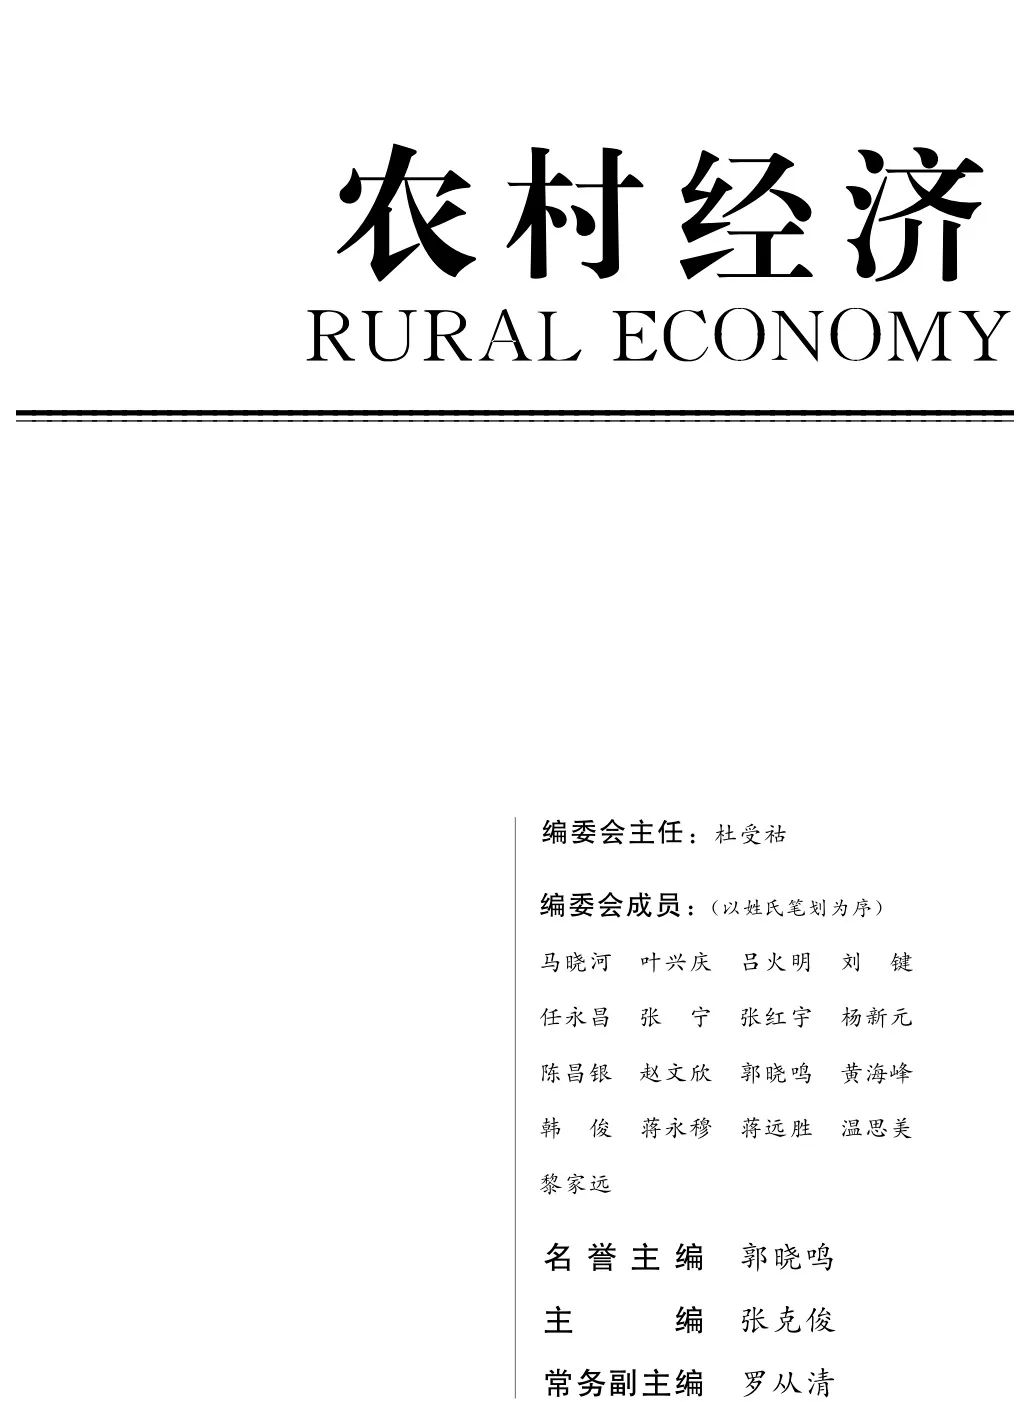 《农村经济》2020年第1期目录和重点文章摘要